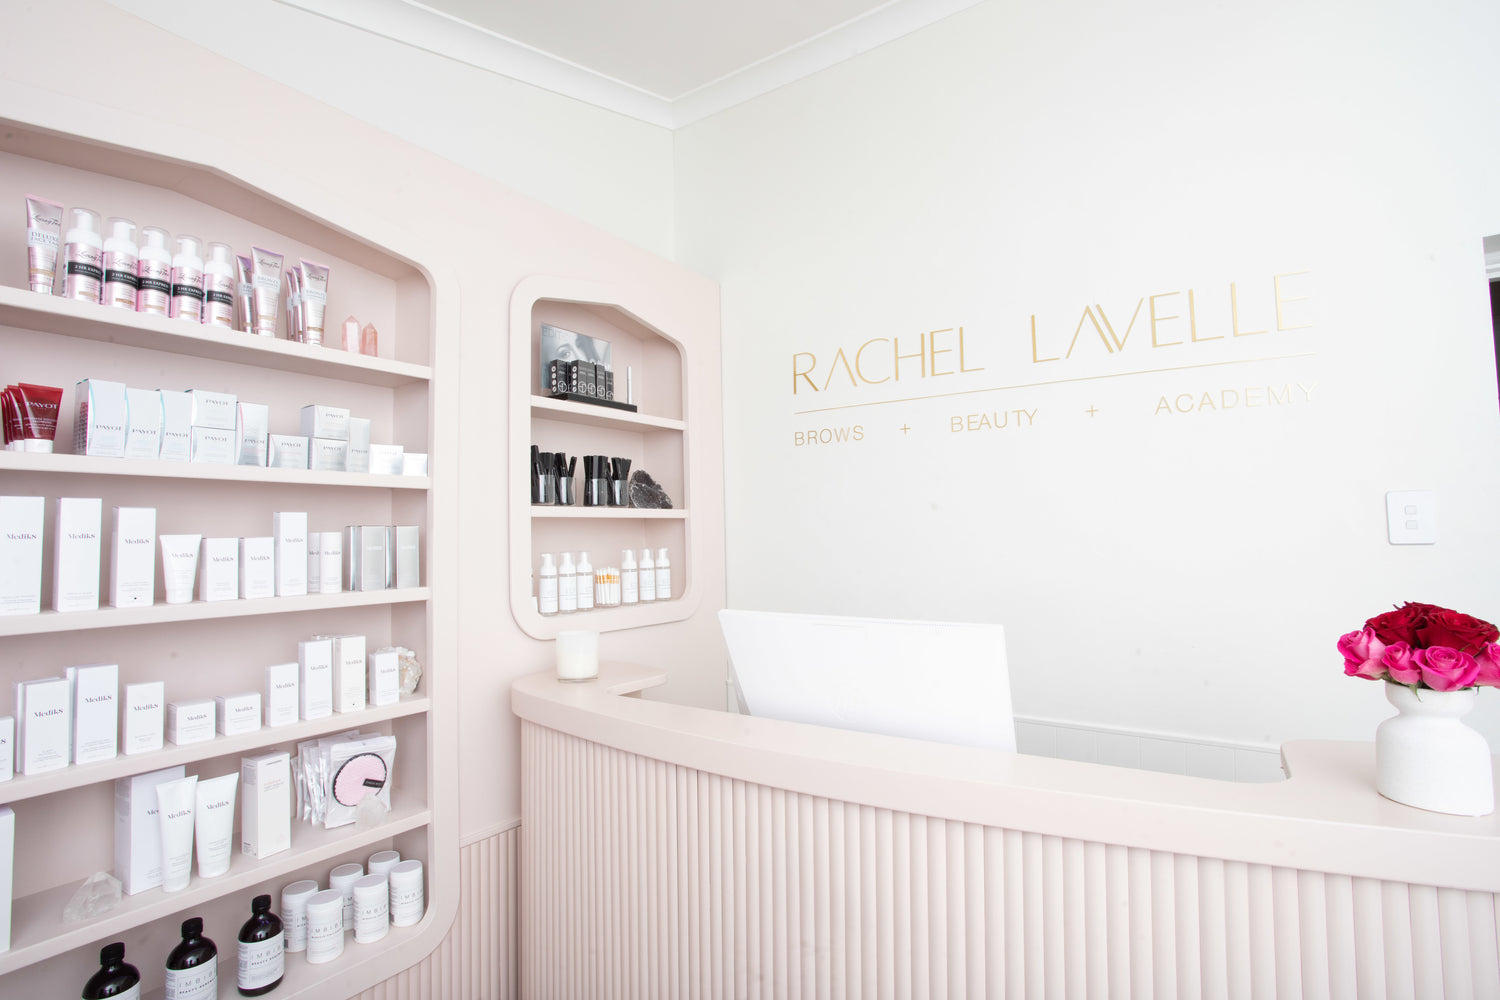 5. Rachel Lavelle Nail Design - Home - wide 6